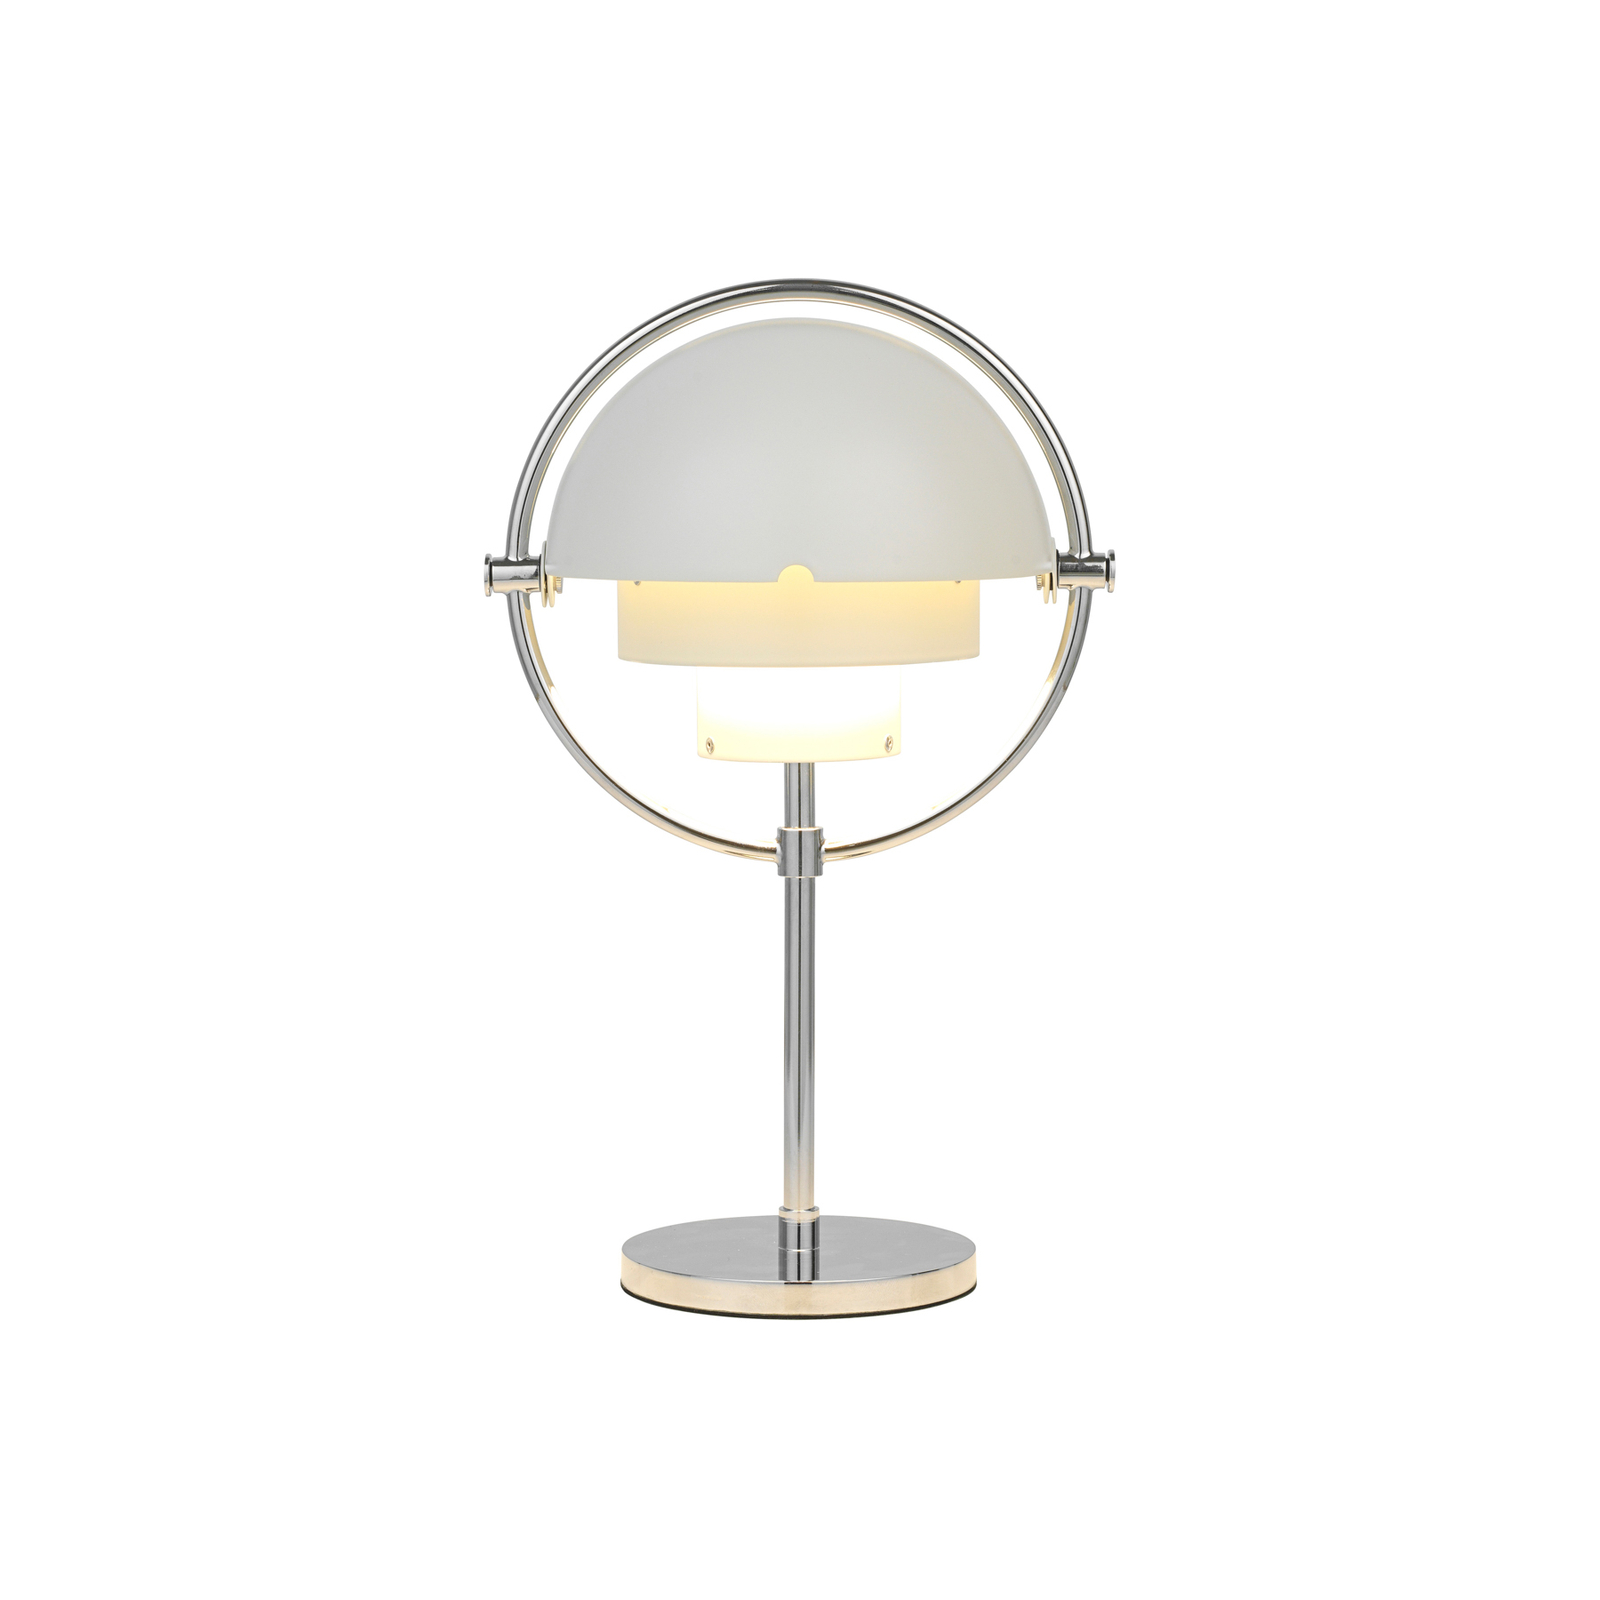 Nabíjecí stolní lampa GUBI Multi-Lite, výška 30 cm, chrom/bílá